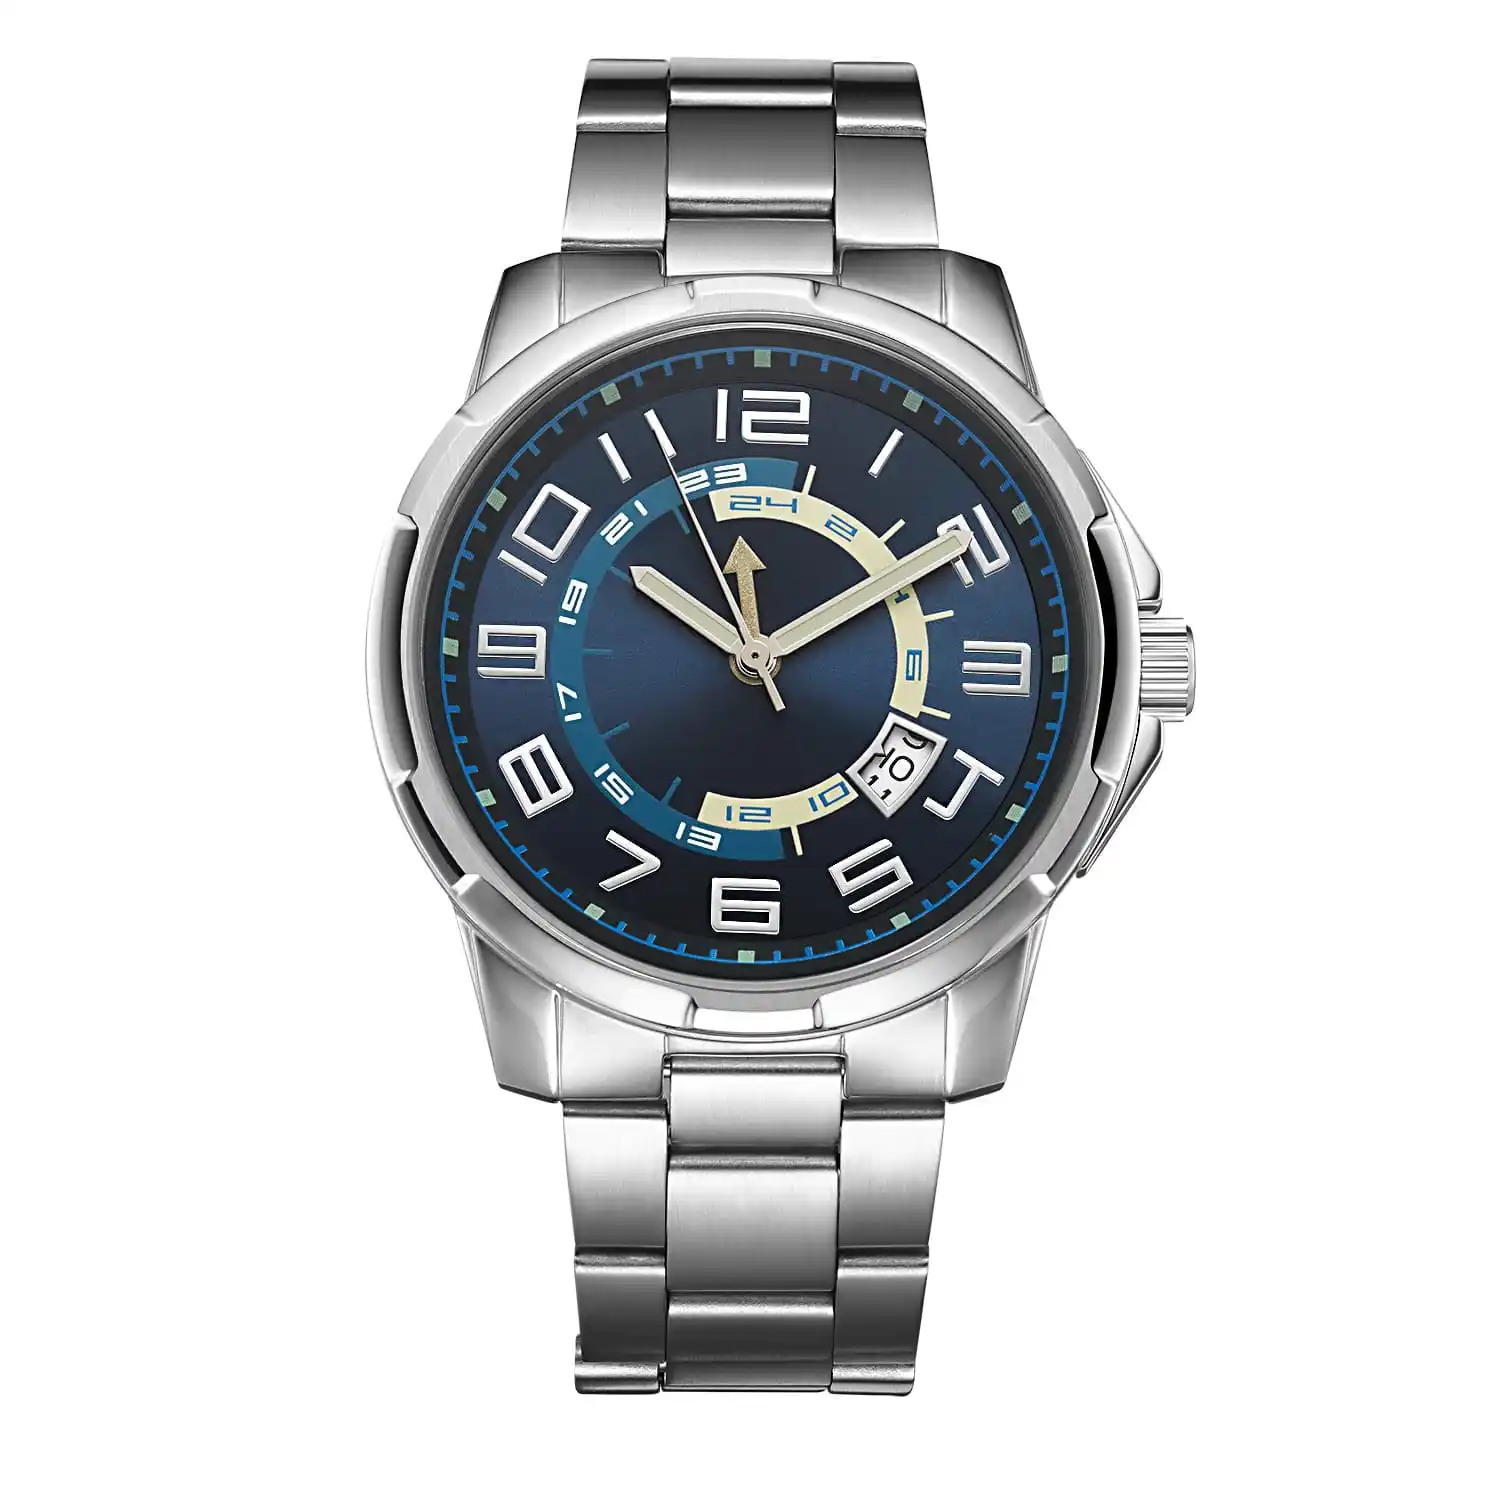 [박스셋] 날짜 표시 높은 비용-효과적인 새로운 판매 제품 남여 공용 손목 시계 석영 남성용 ODM OEM